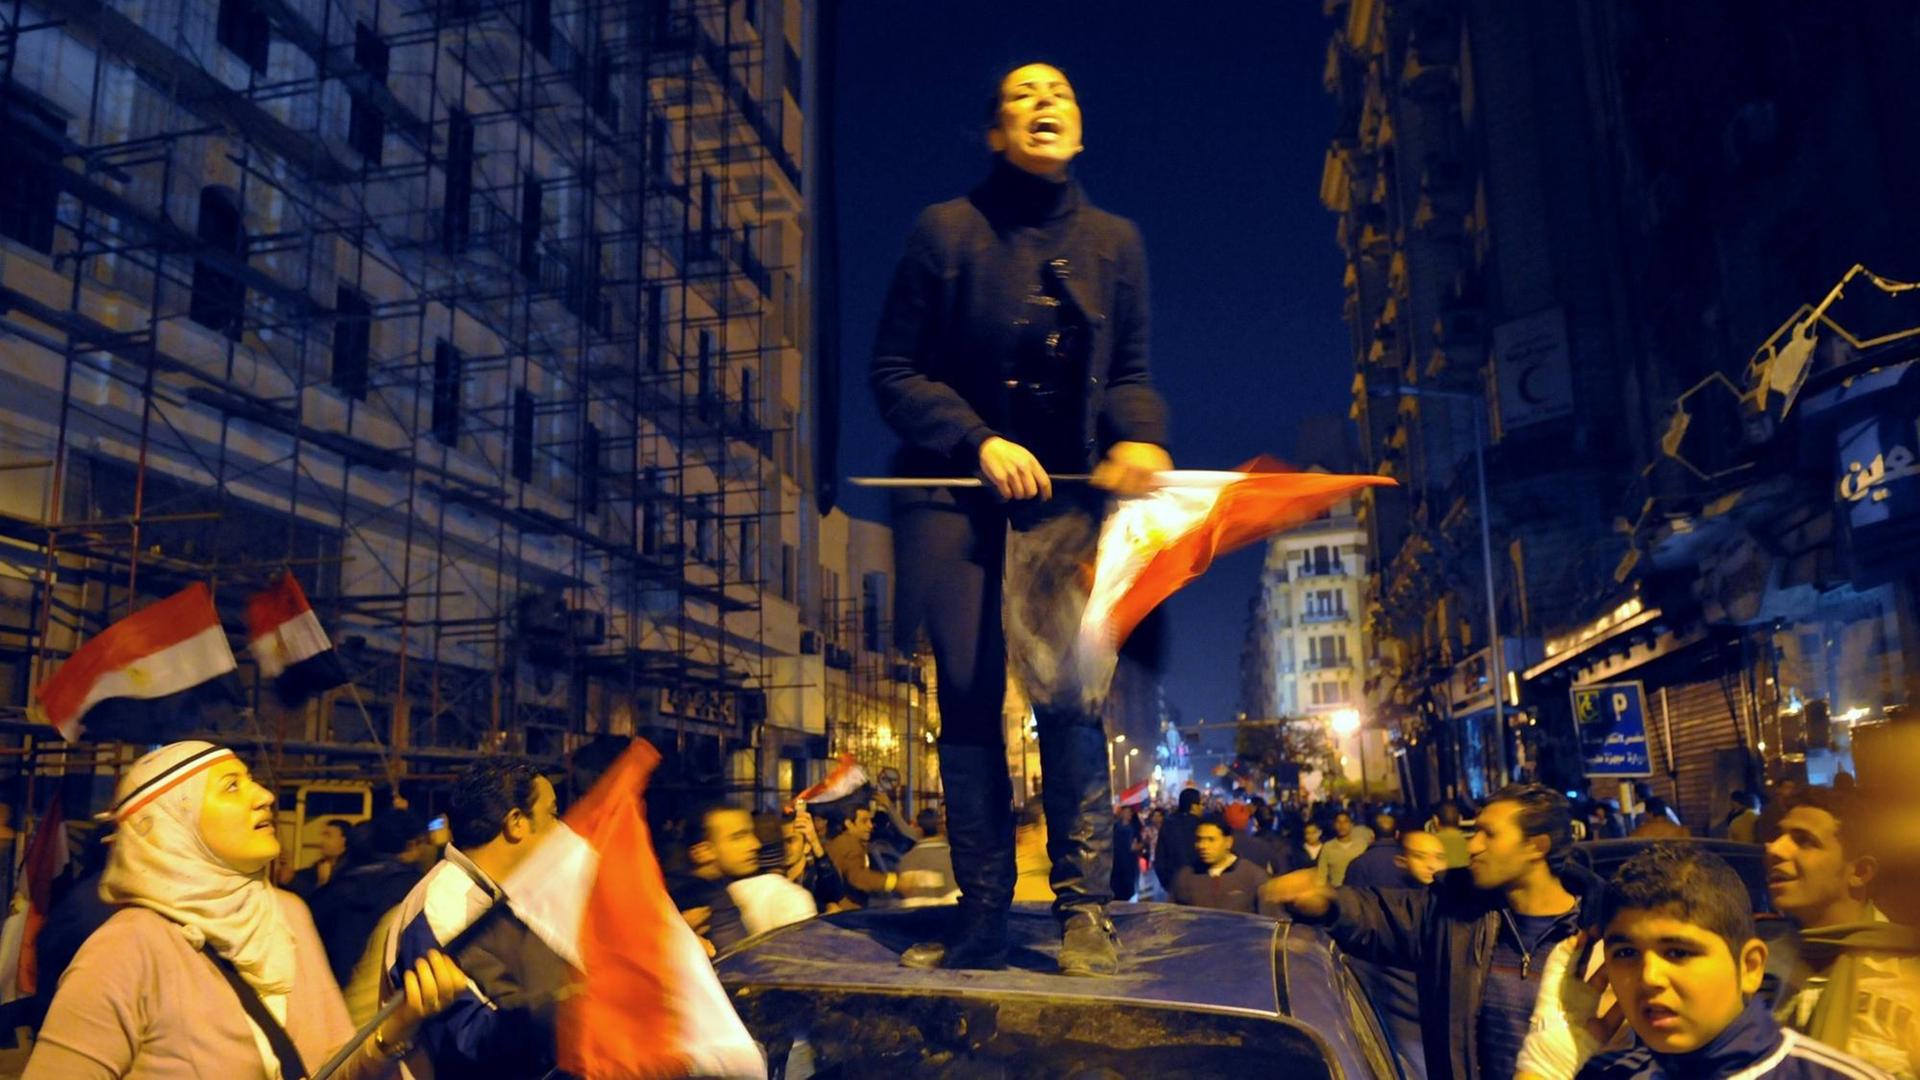 Nach riesigen Protesten auf dem Tahir-Platz in Kairo musste Ägyptens Präsident Mubarak am 11. Februar 2011 zurücktreten.